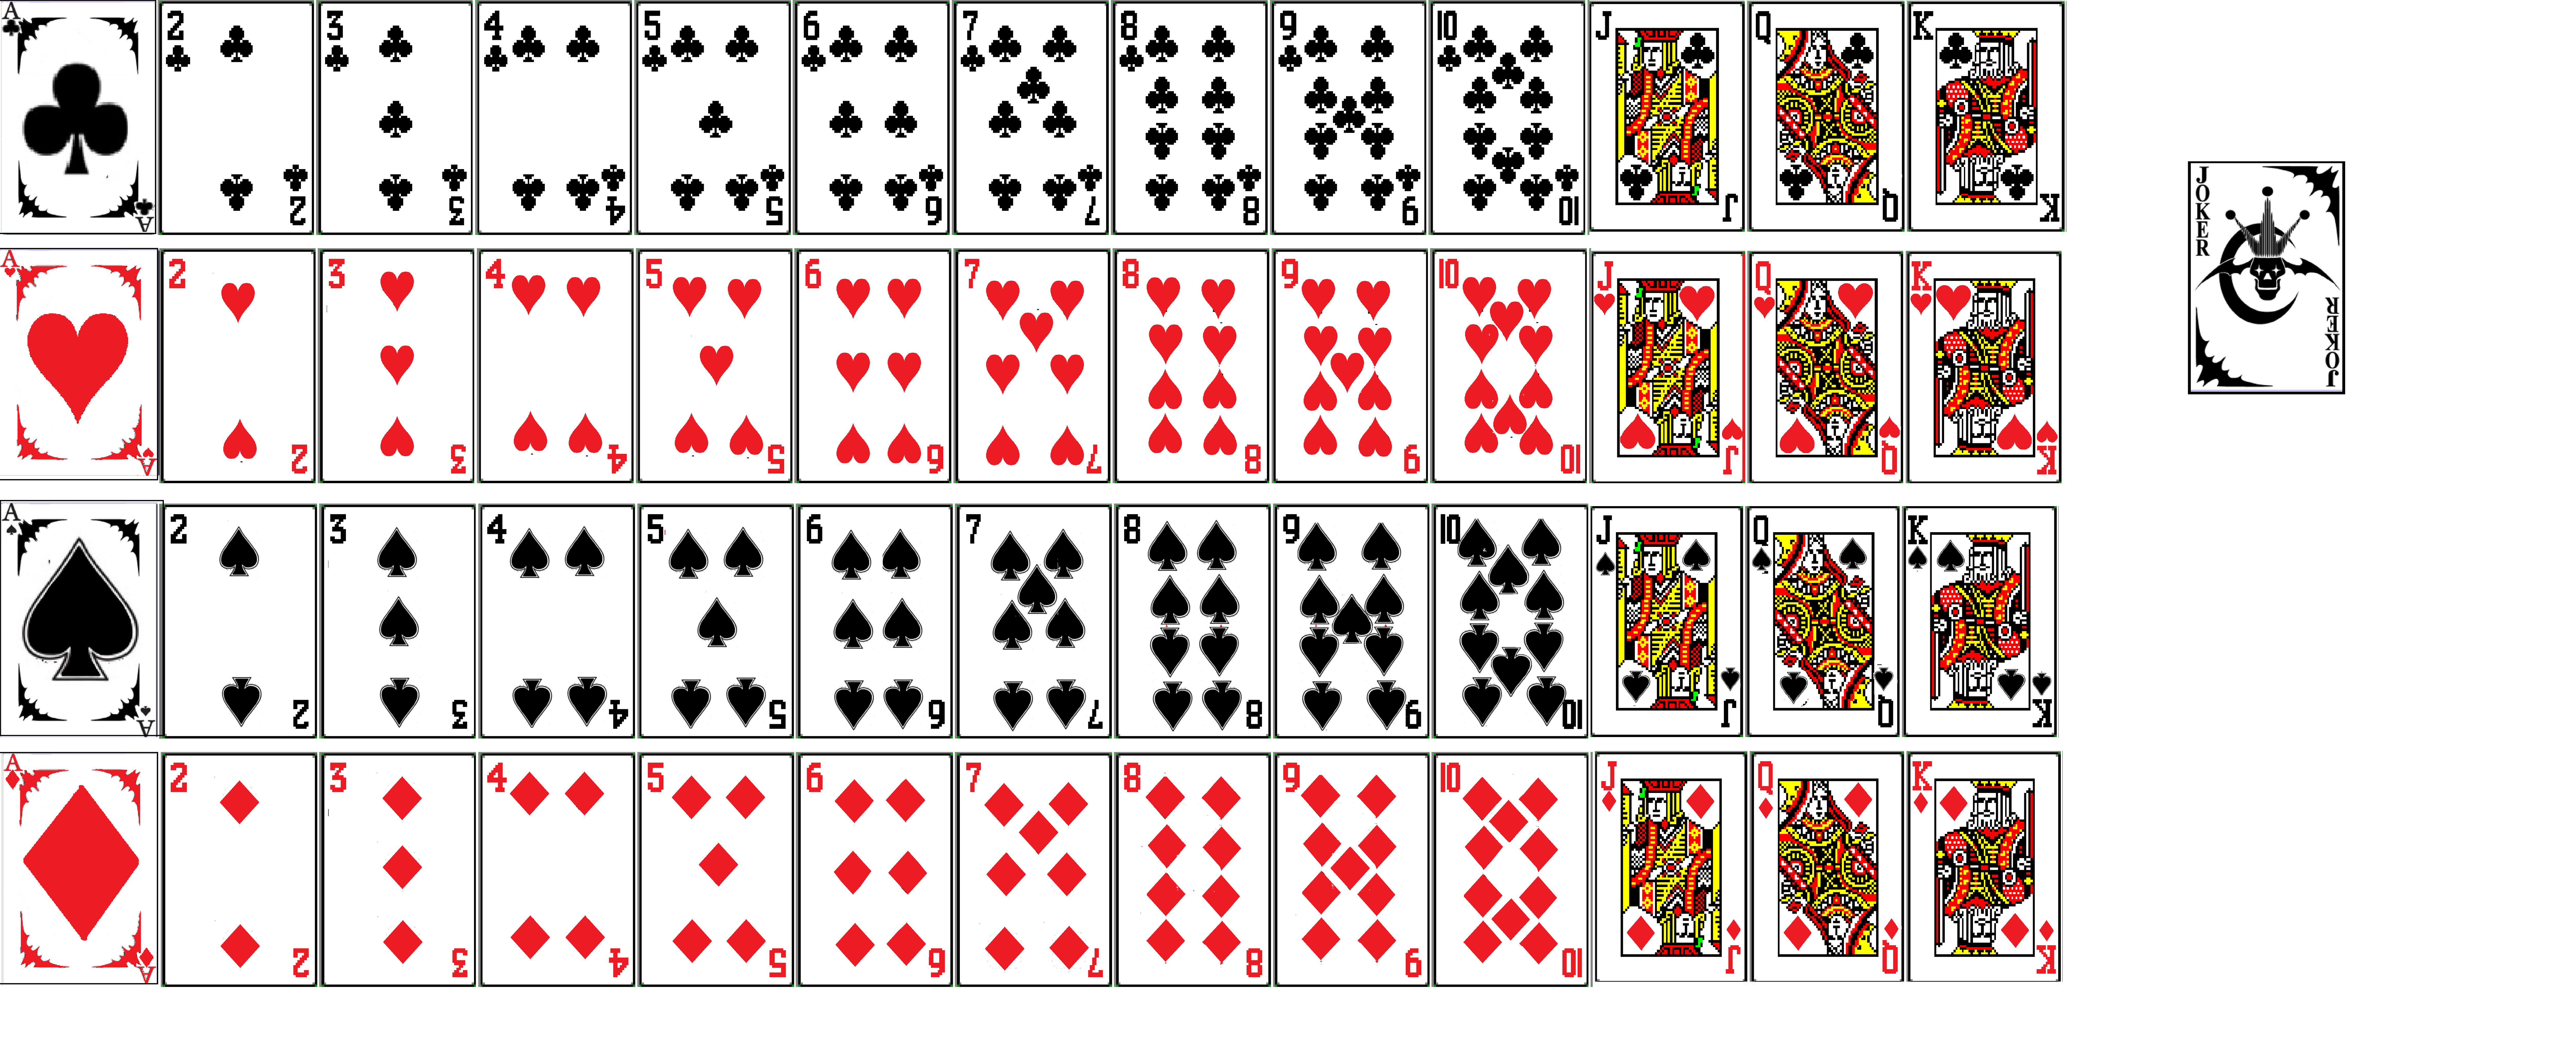 52 игральных карты. Игральные карты" playing Cards Готика". Колода 52 карты. Standard 52-Card Deck. Дизайнерские колоды карт.